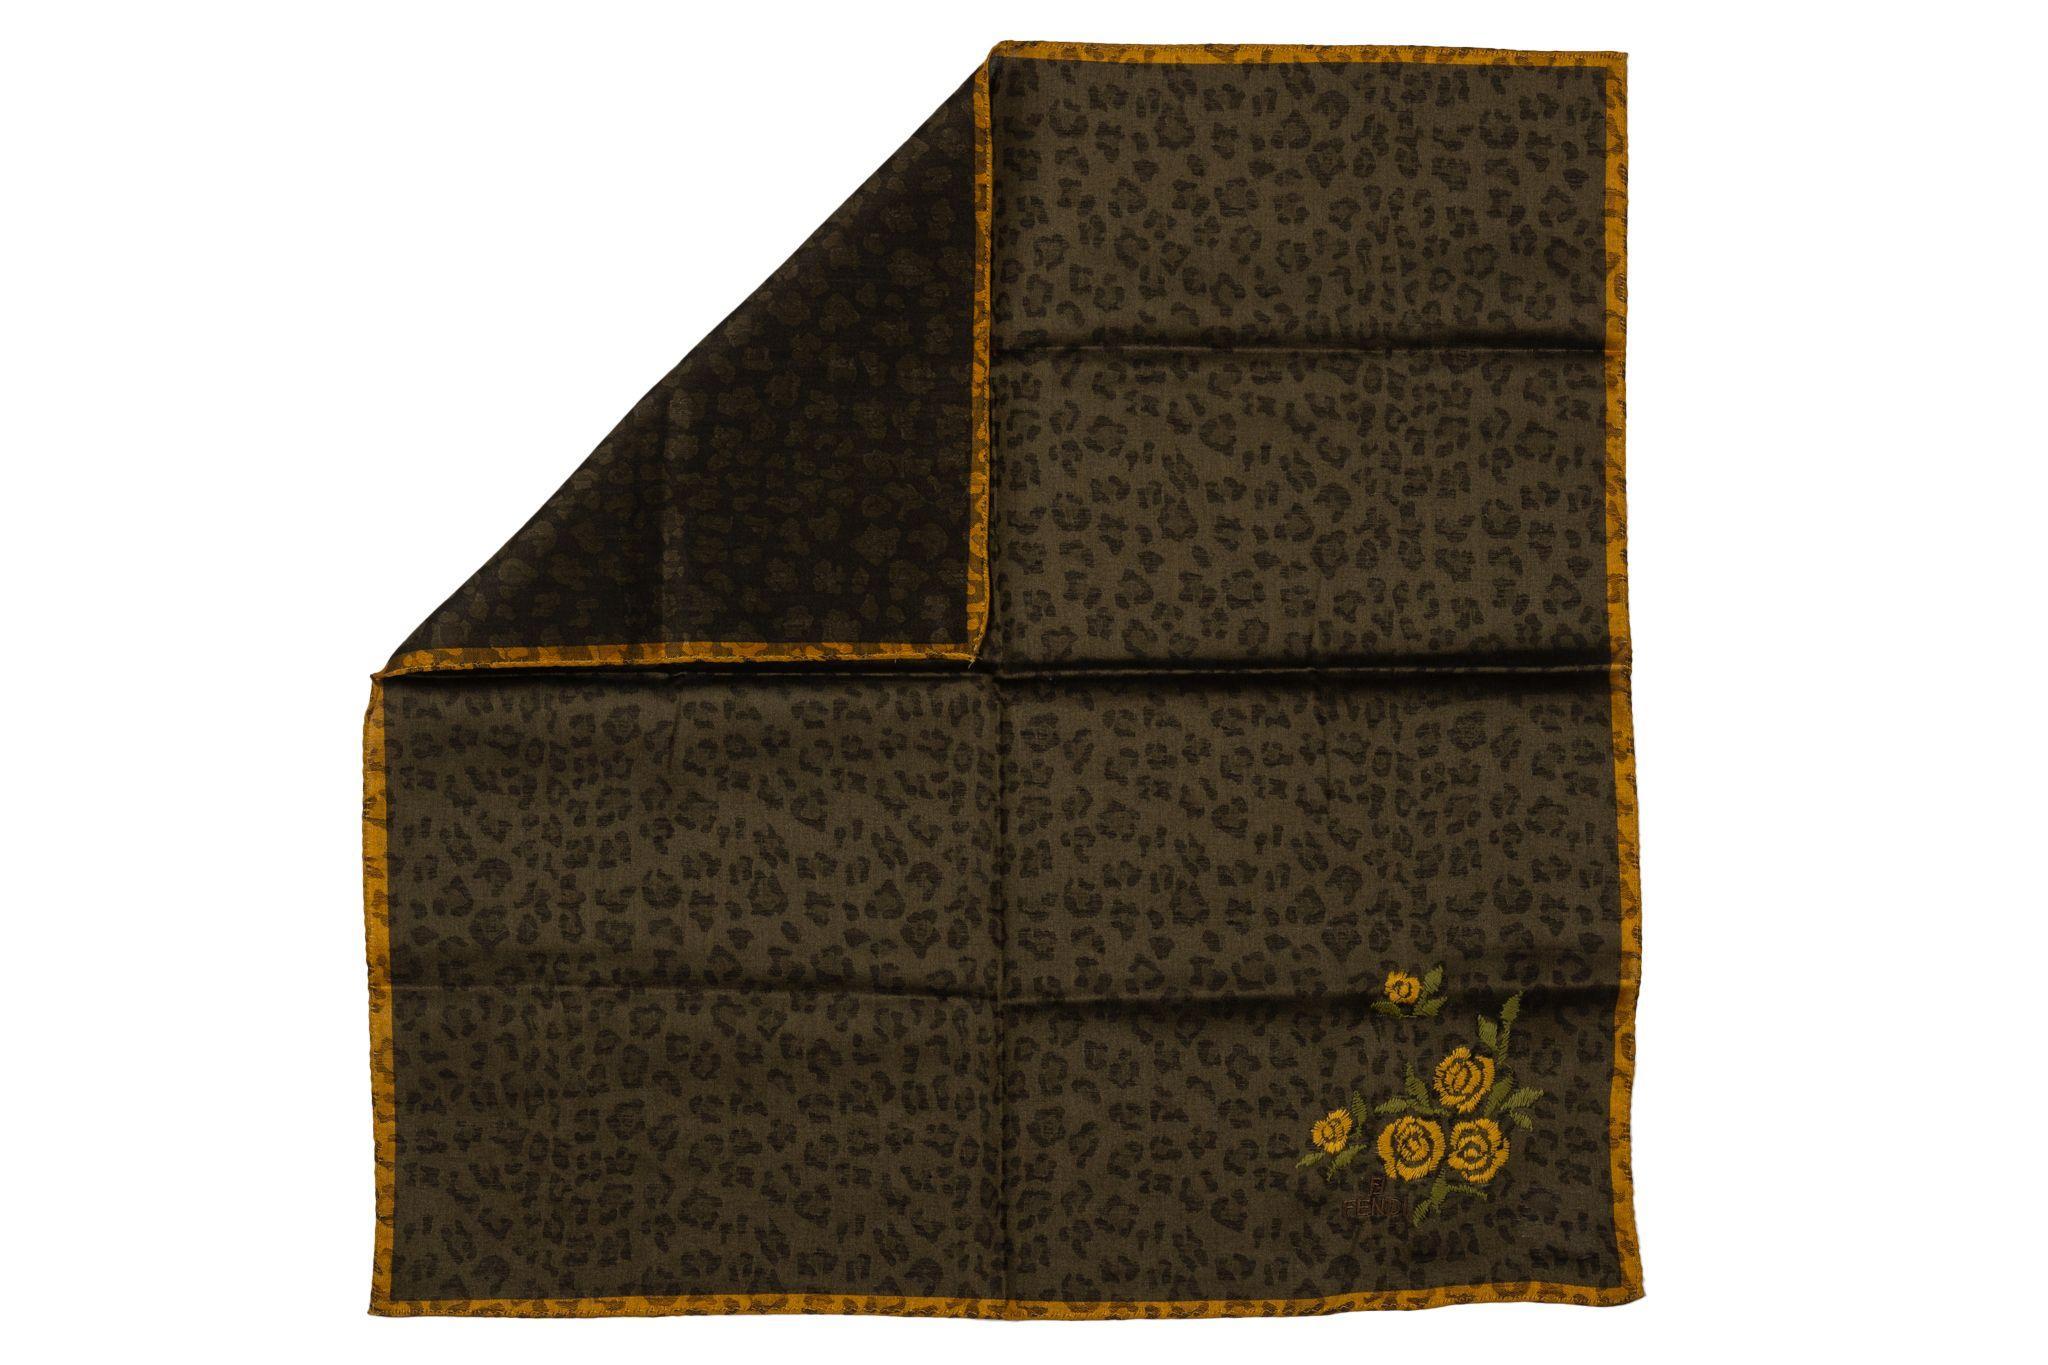 Gavroche en coton neuf de Fendi, imprimé guépard marron avec fleurs jaunes.
Pas de Label.